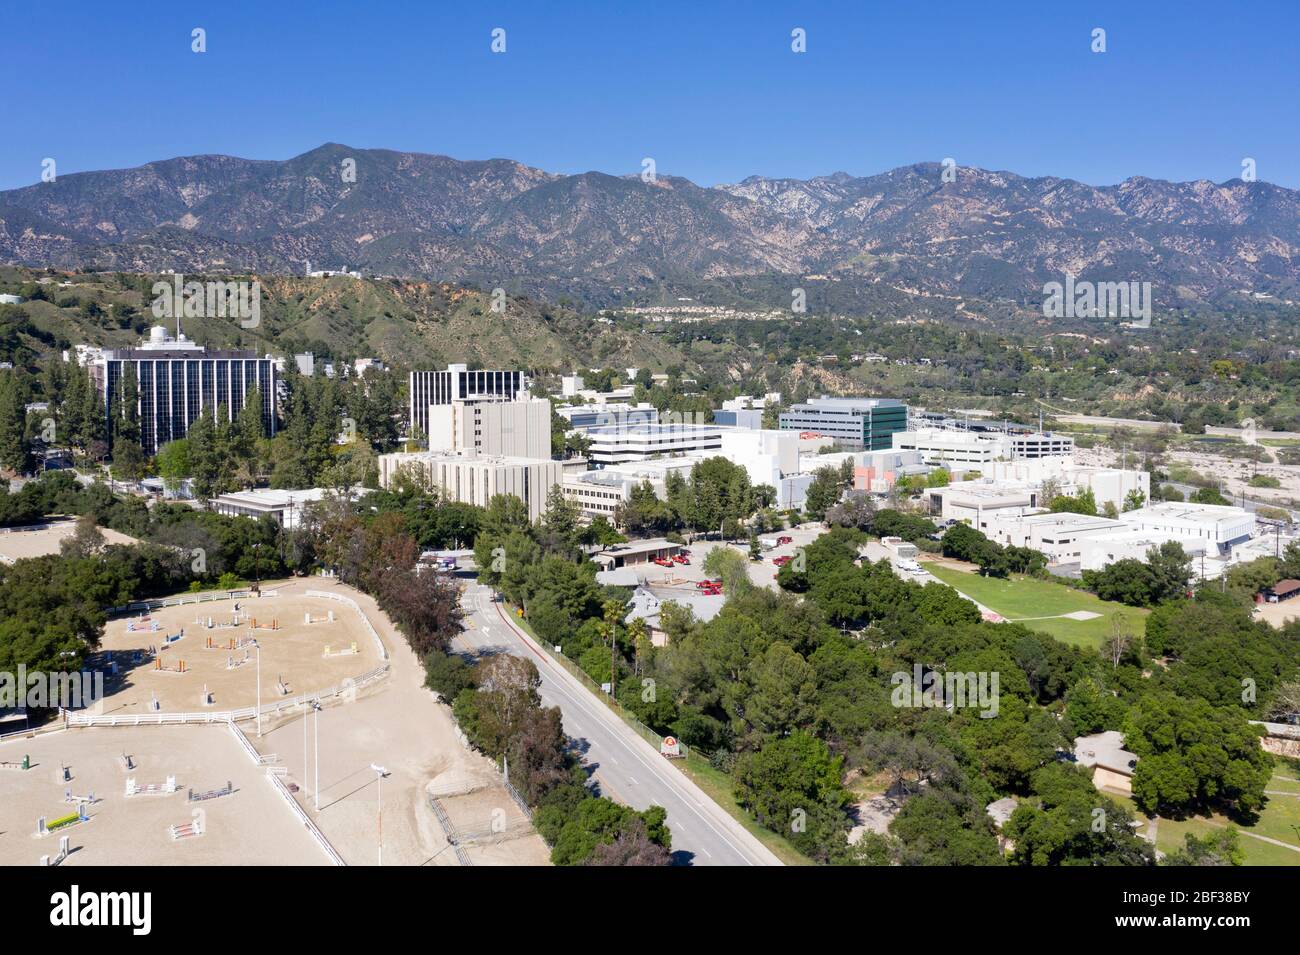 Vista aerea del laboratorio di propulsione a getto della NASA & Caltech (JPL) situato ai piedi sopra Pasadena a la Canada Flintridge, California Foto Stock